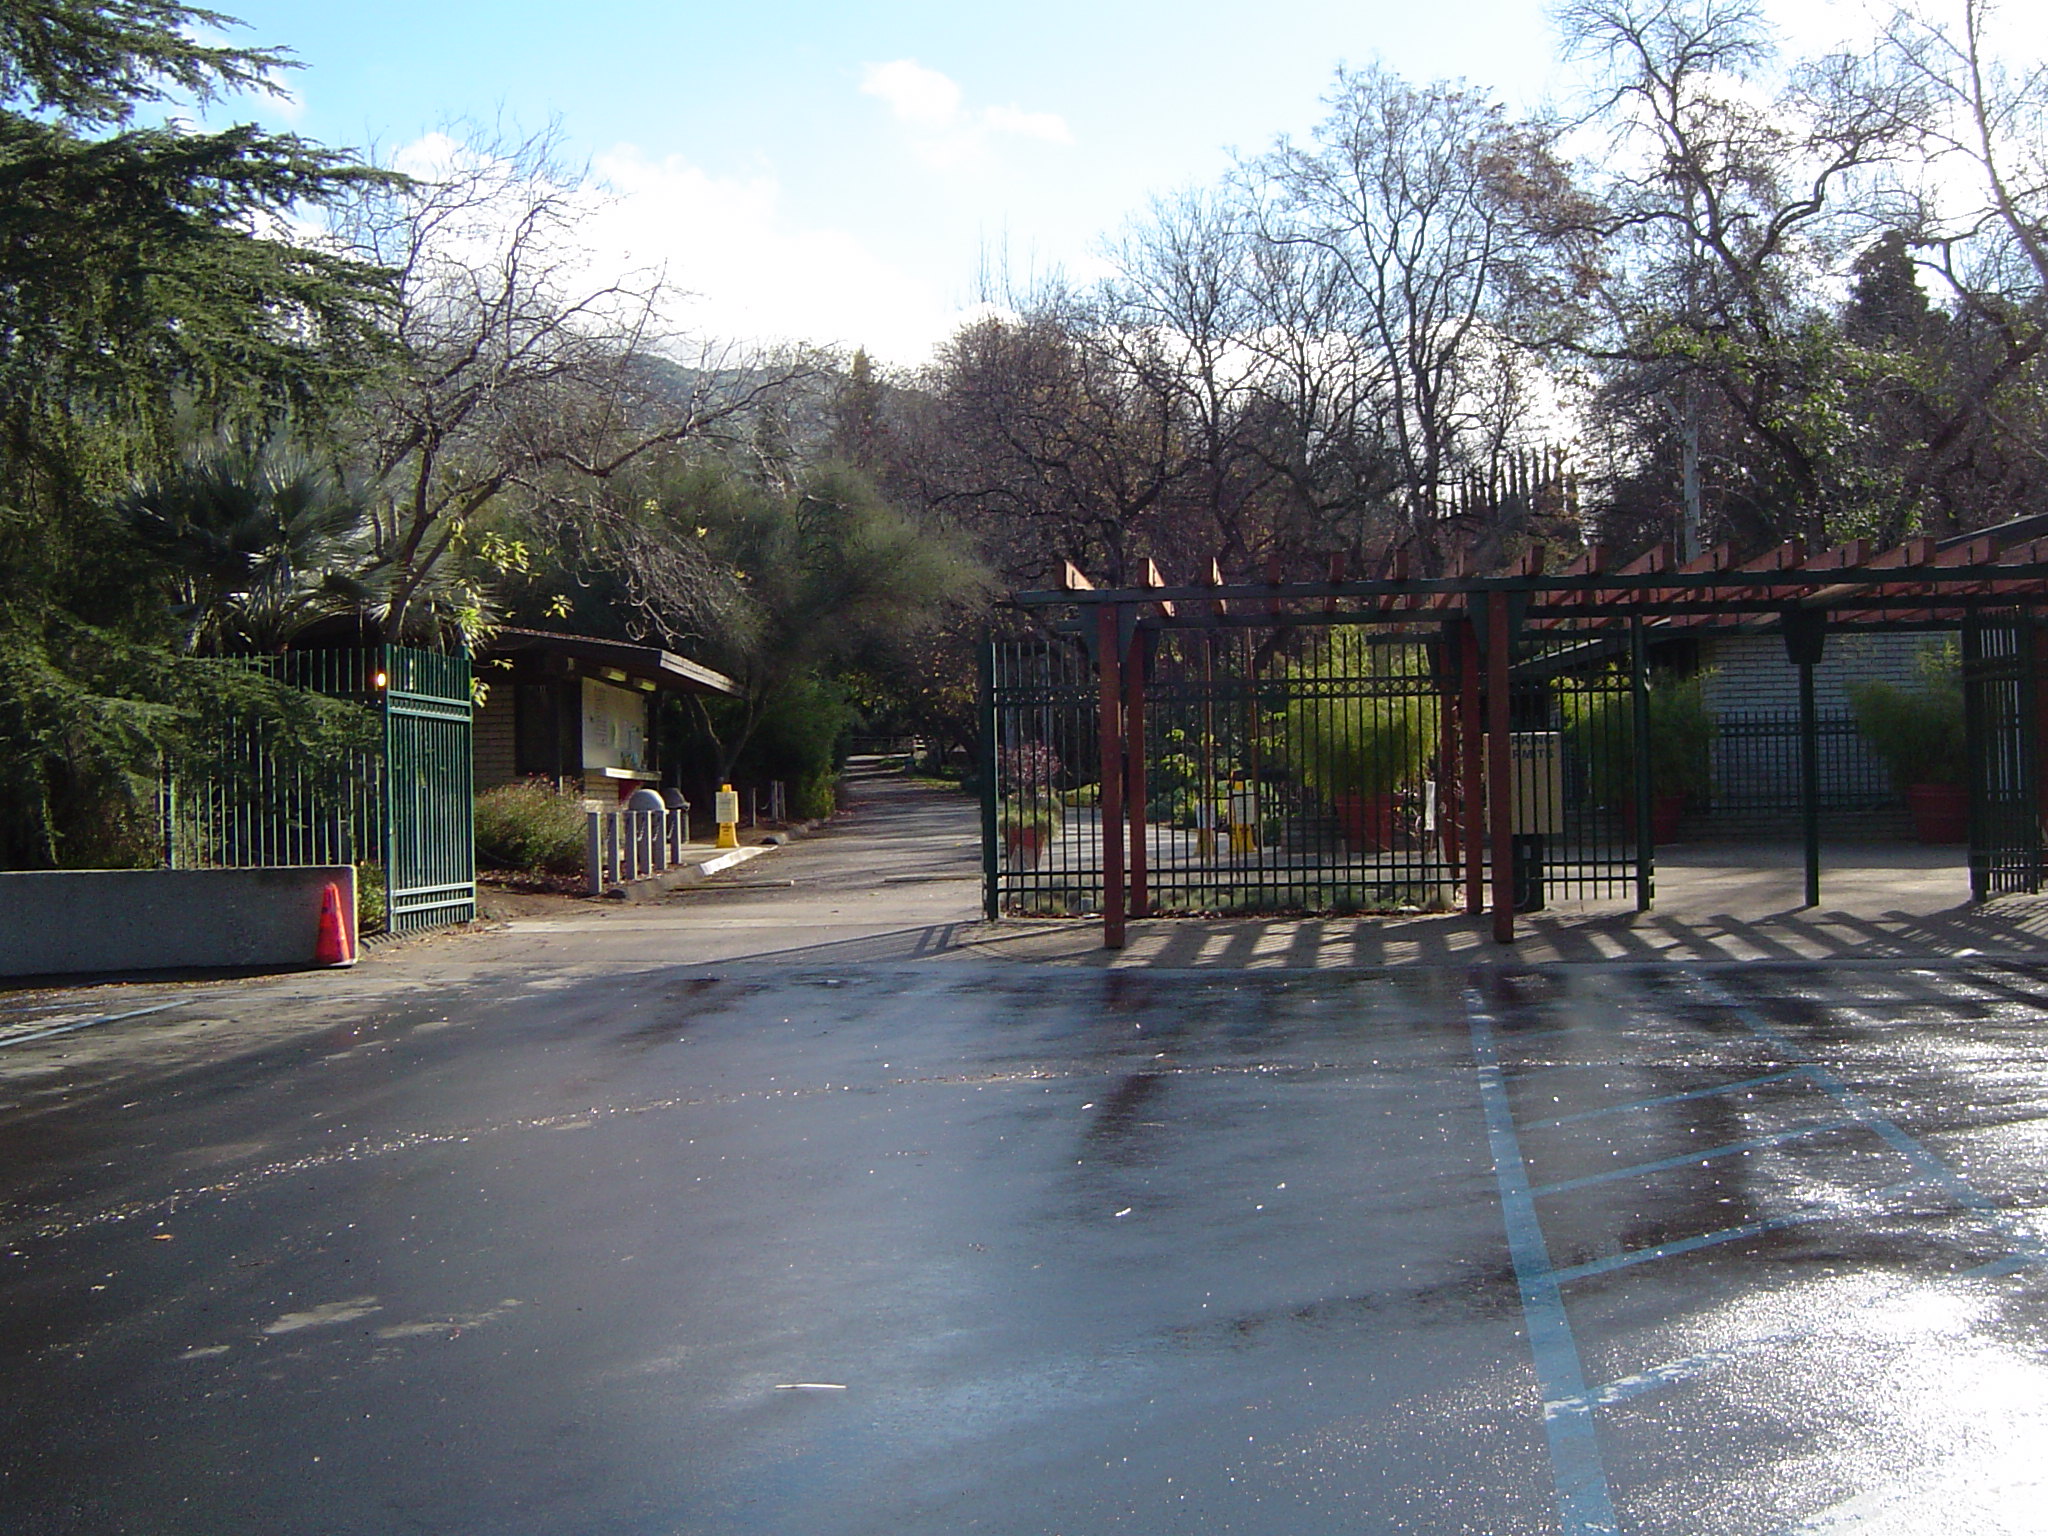 Entrance to the Japanese Garden